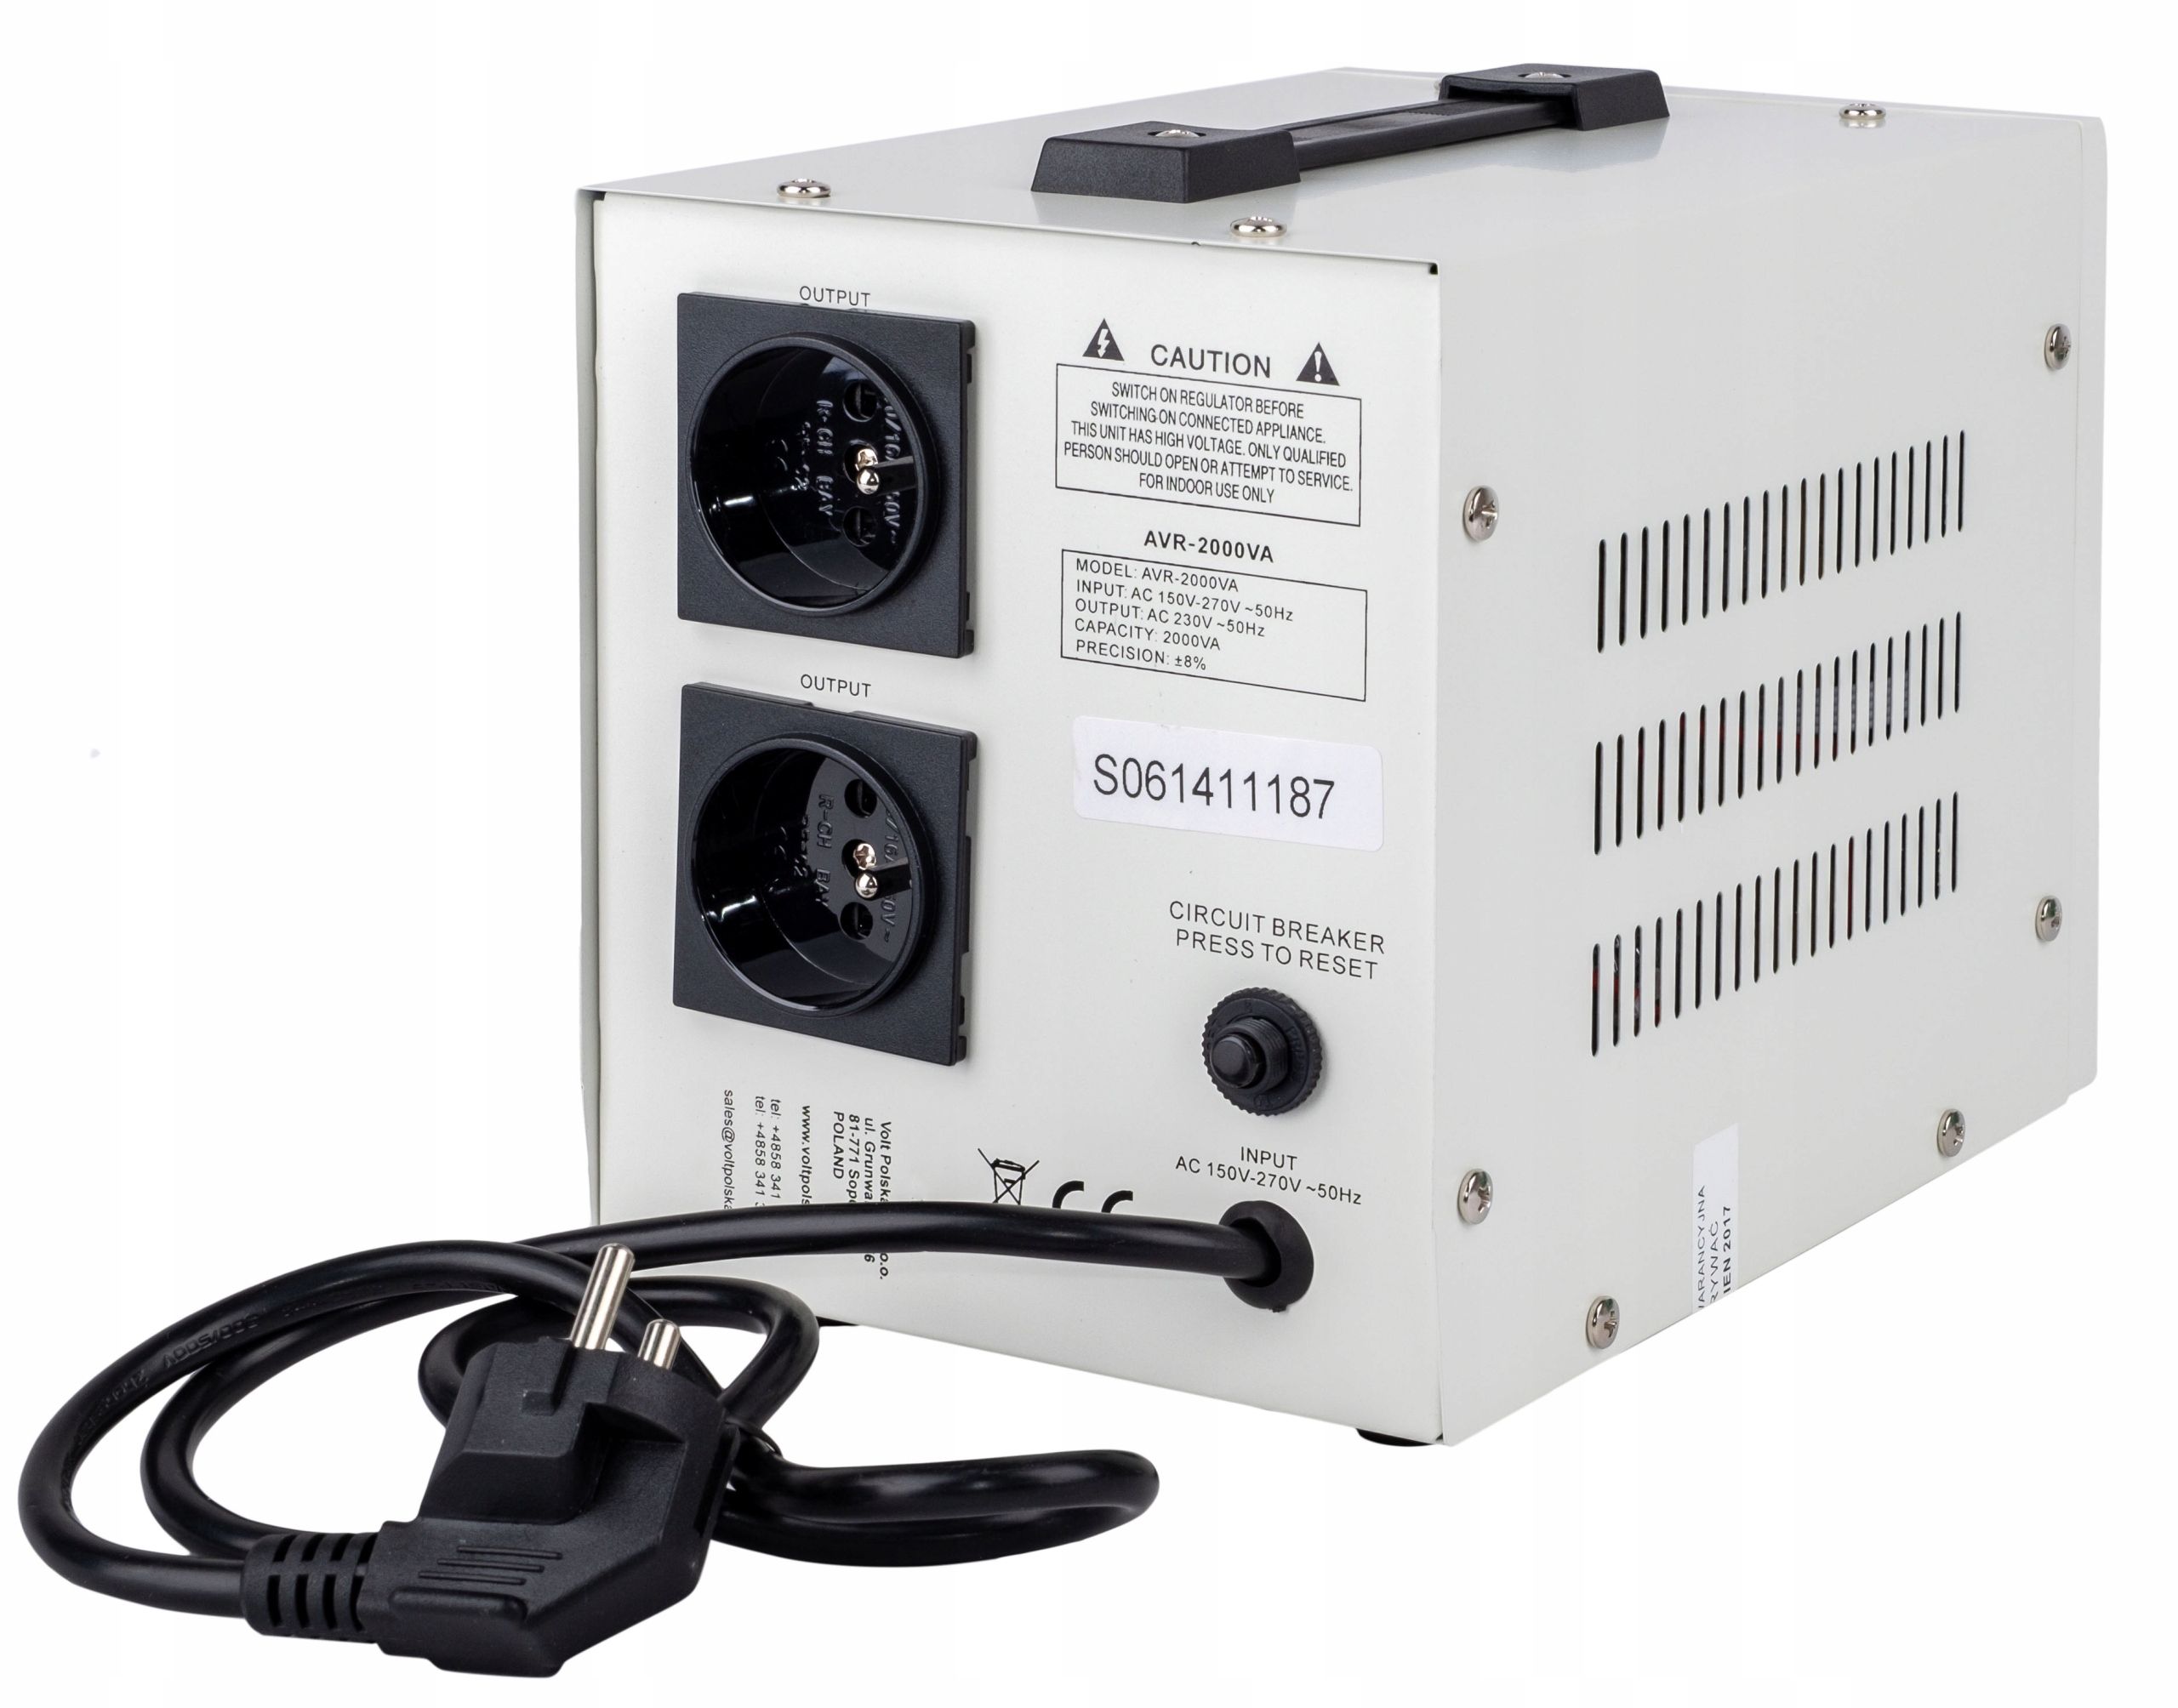 Stabilizator napięcia prądu AVR 2000W do agregatu (PRZ96)